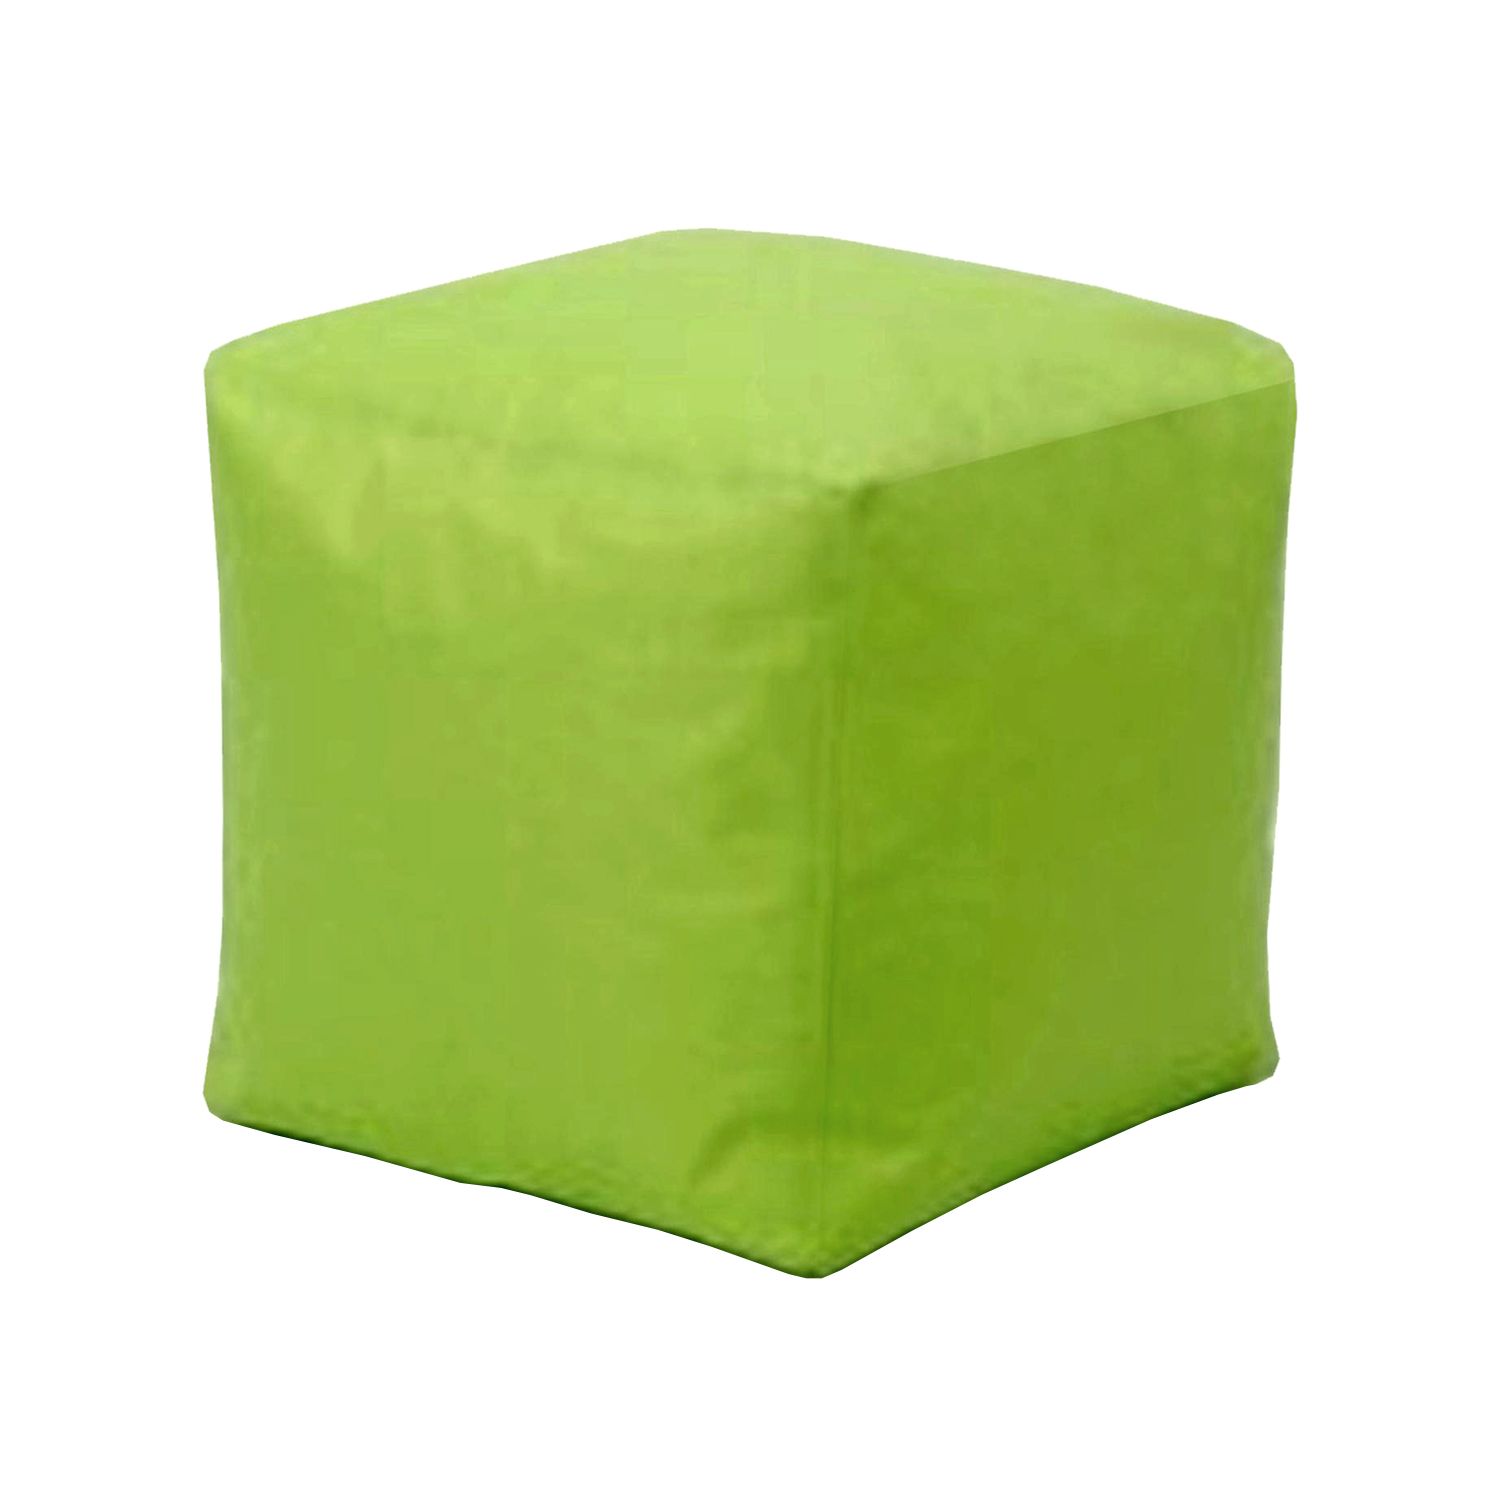 Sedací taburet CUBE světle zelený s náplní - IDEA nábytek